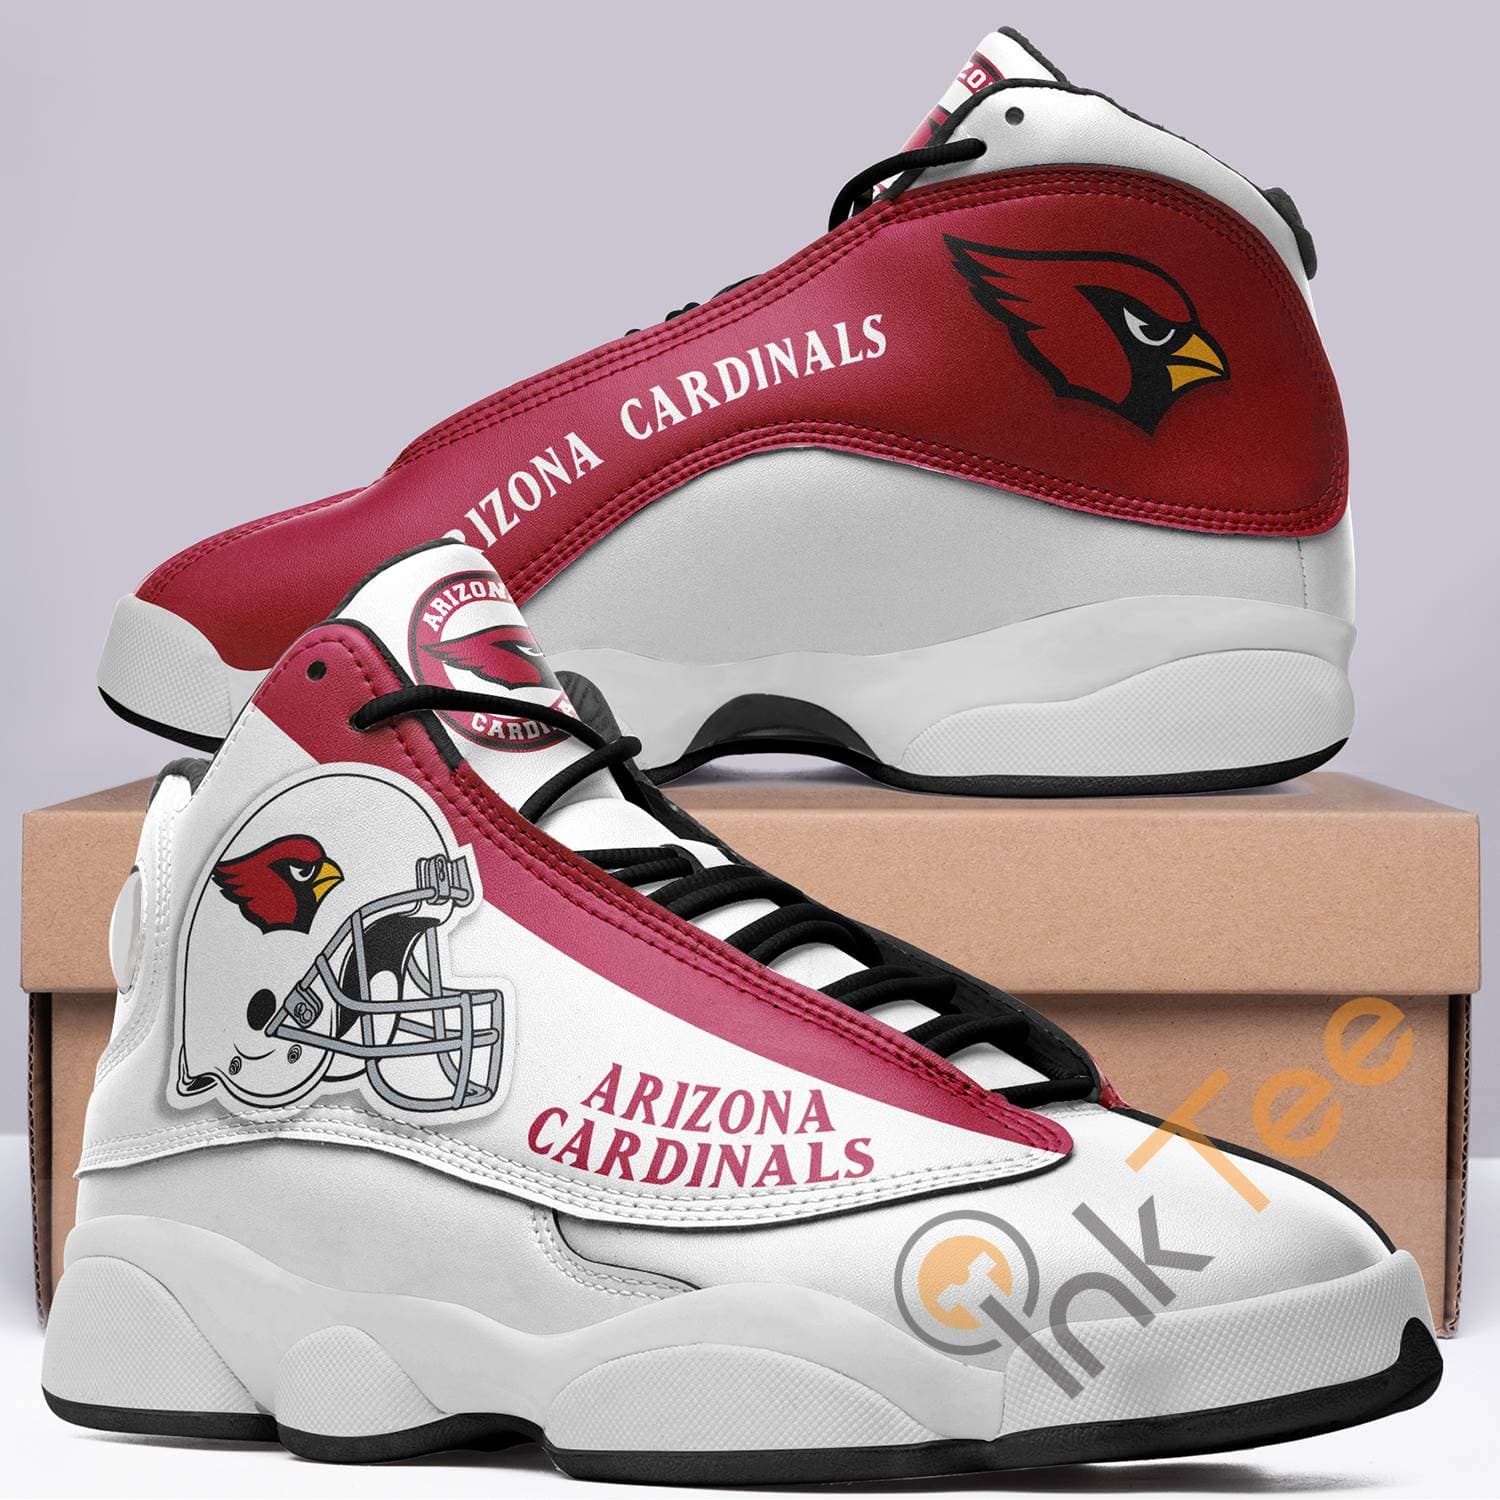 Arizona Cardinals Air Jordan Shoes